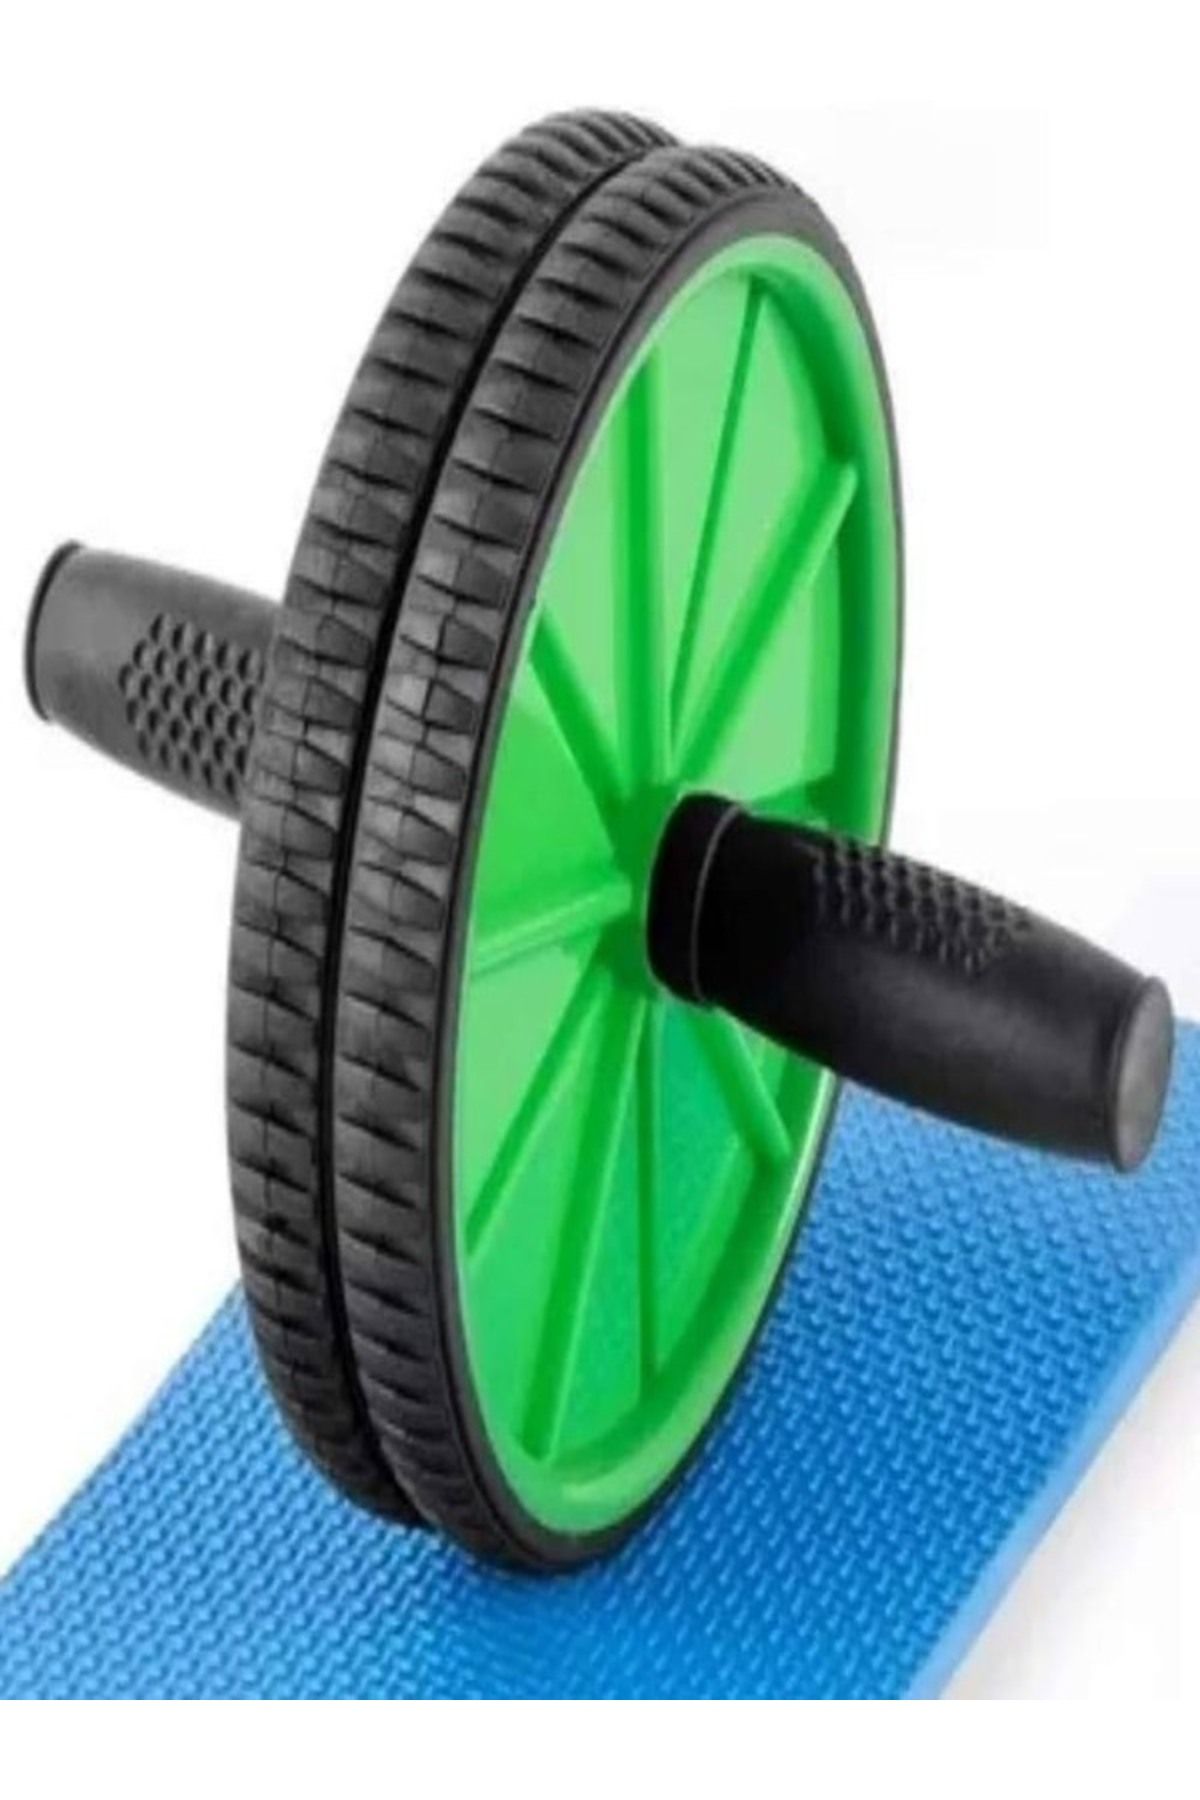 Clifton Fitness Karın Kası Sixpack Egzersiz Tekeri Spor Aleti (Yeşil)